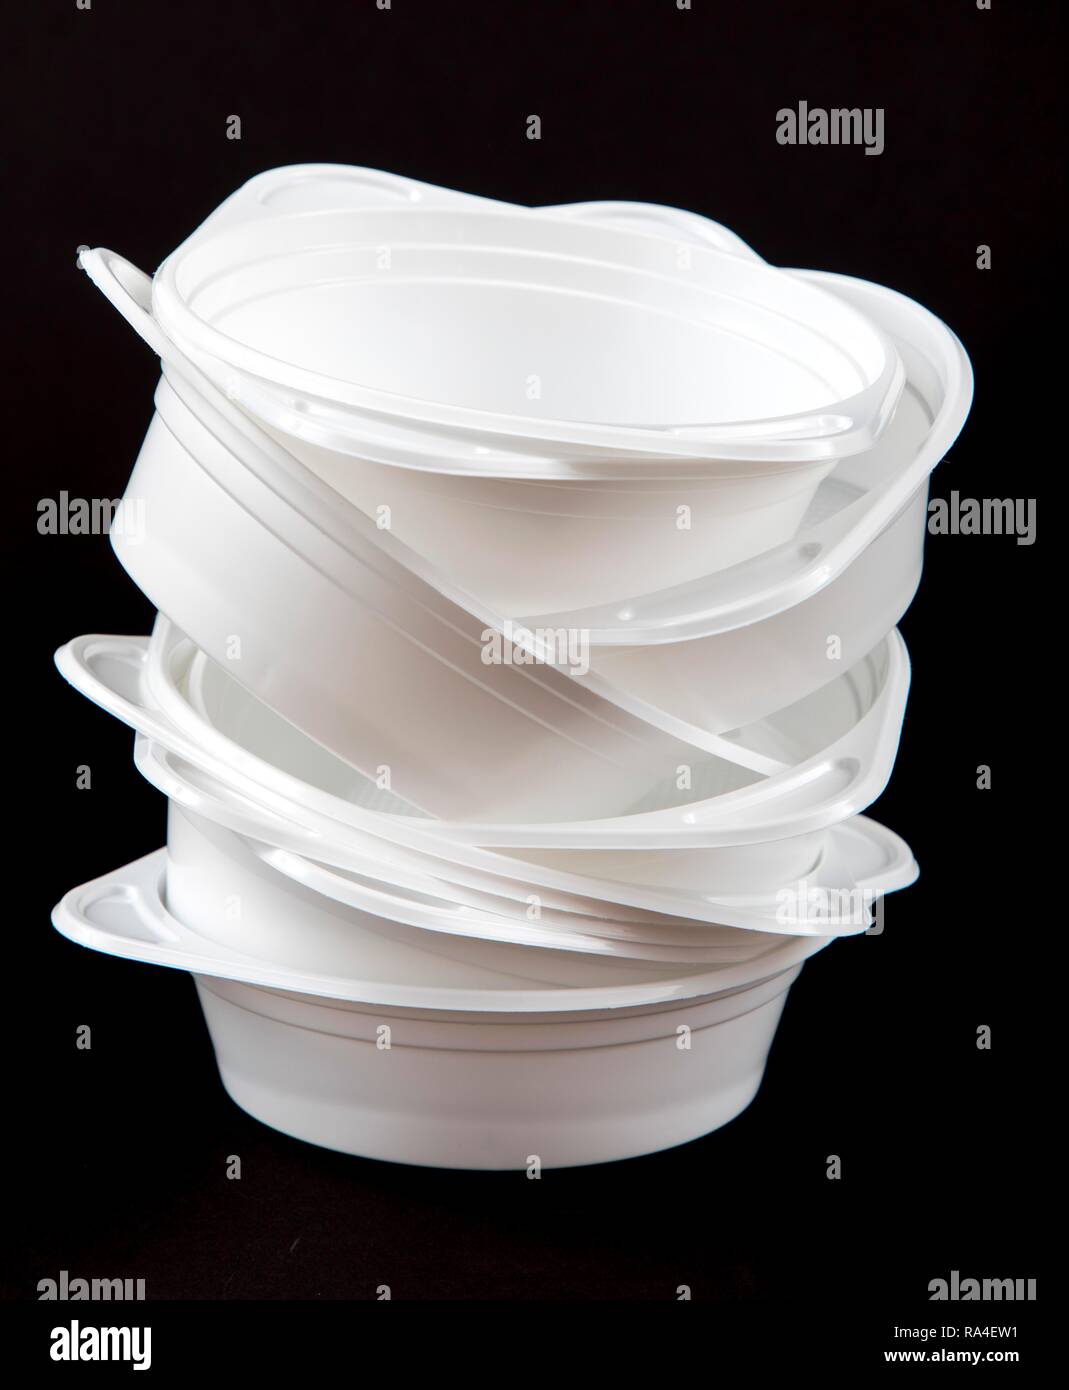 https://c8.alamy.com/compes/ra4ew1/placas-de-plastico-platos-de-plastico-platos-desechables-de-plastico-sopa-de-basura-placas-blanco-ra4ew1.jpg